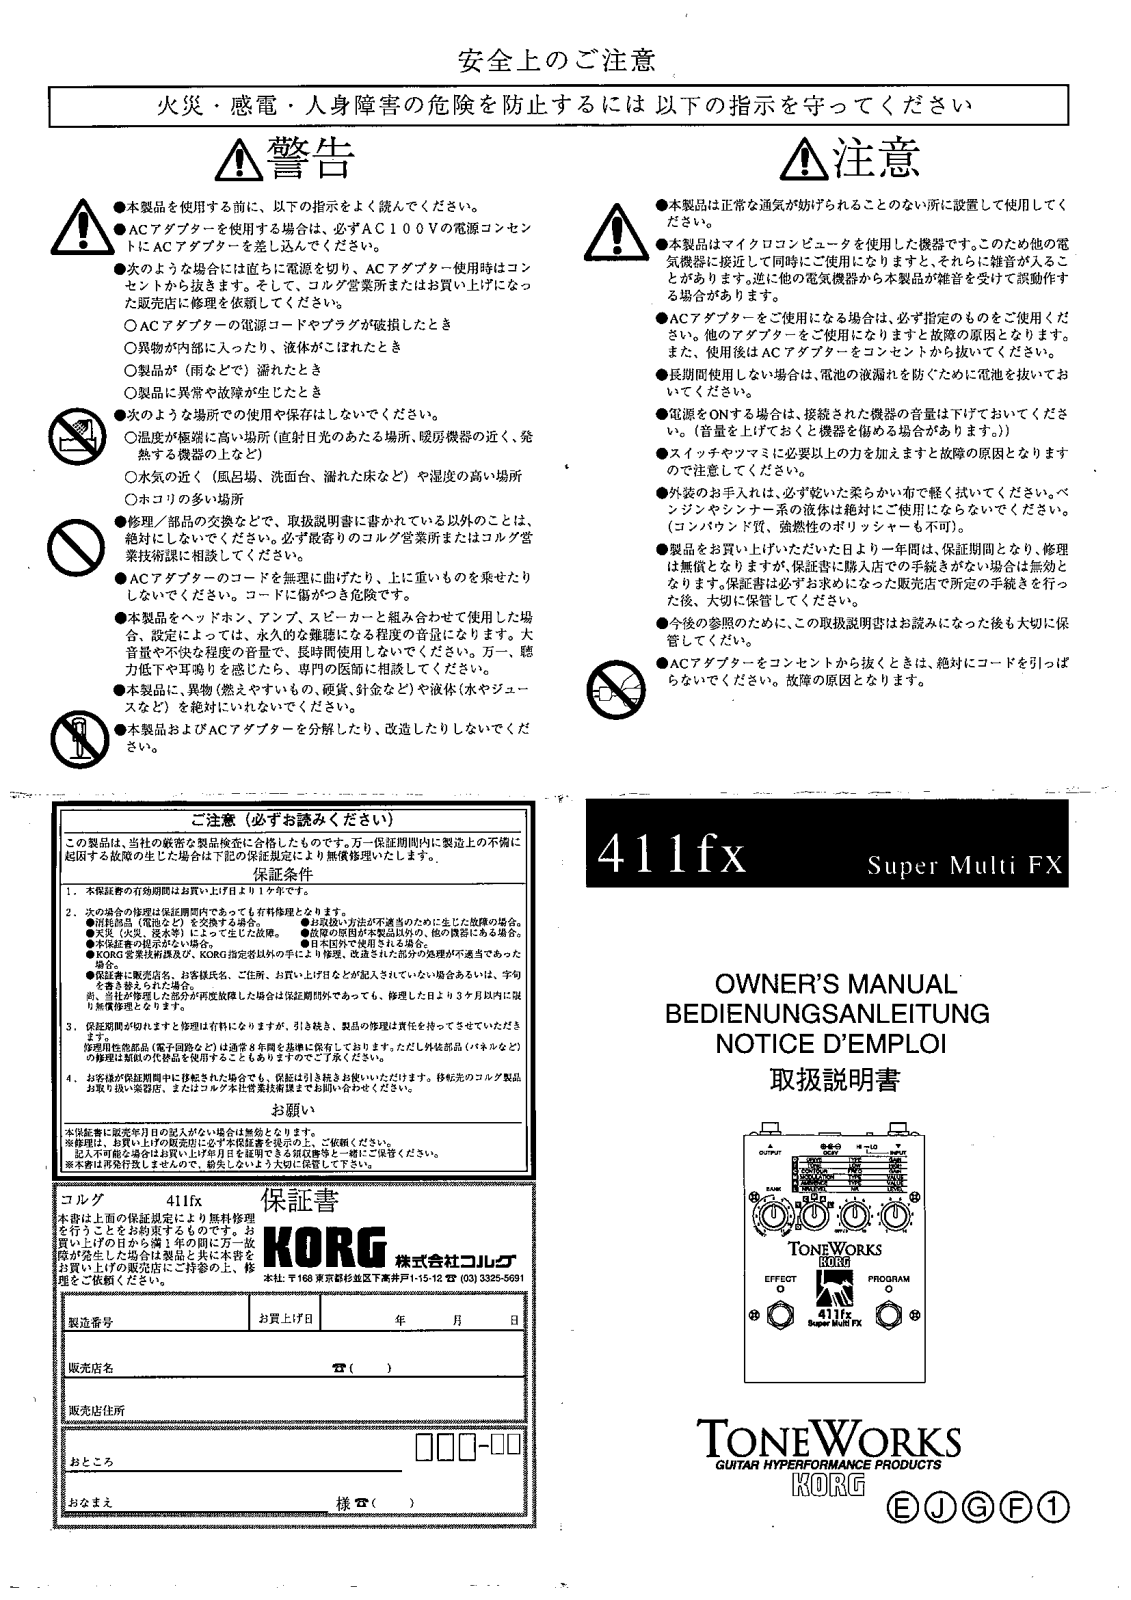 Korg 411fx Super Multi FX User Manual